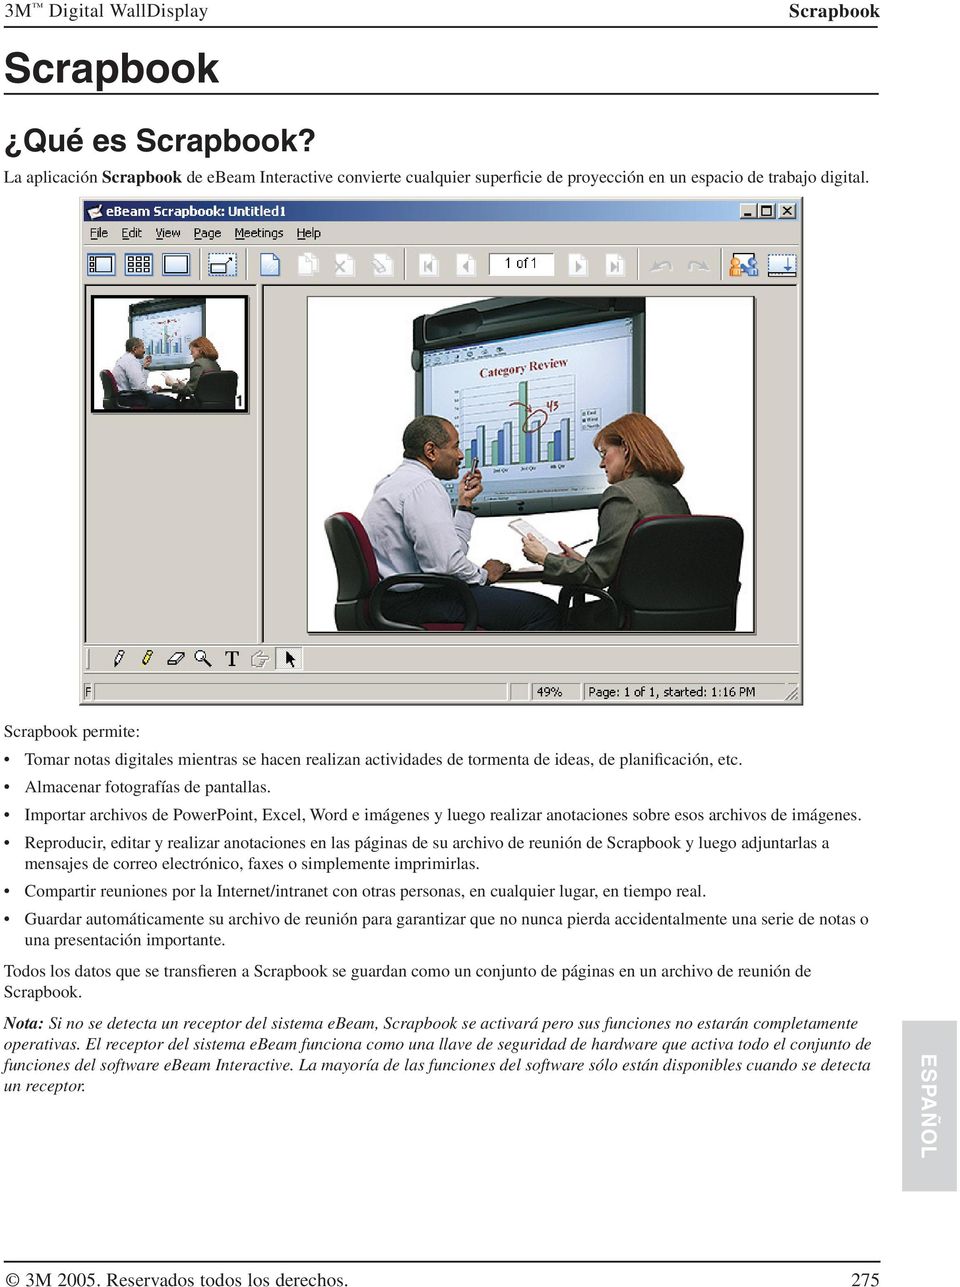 Importar archivos de PowerPoint, Excel, Word e imágenes y luego realizar anotaciones sobre esos archivos de imágenes.